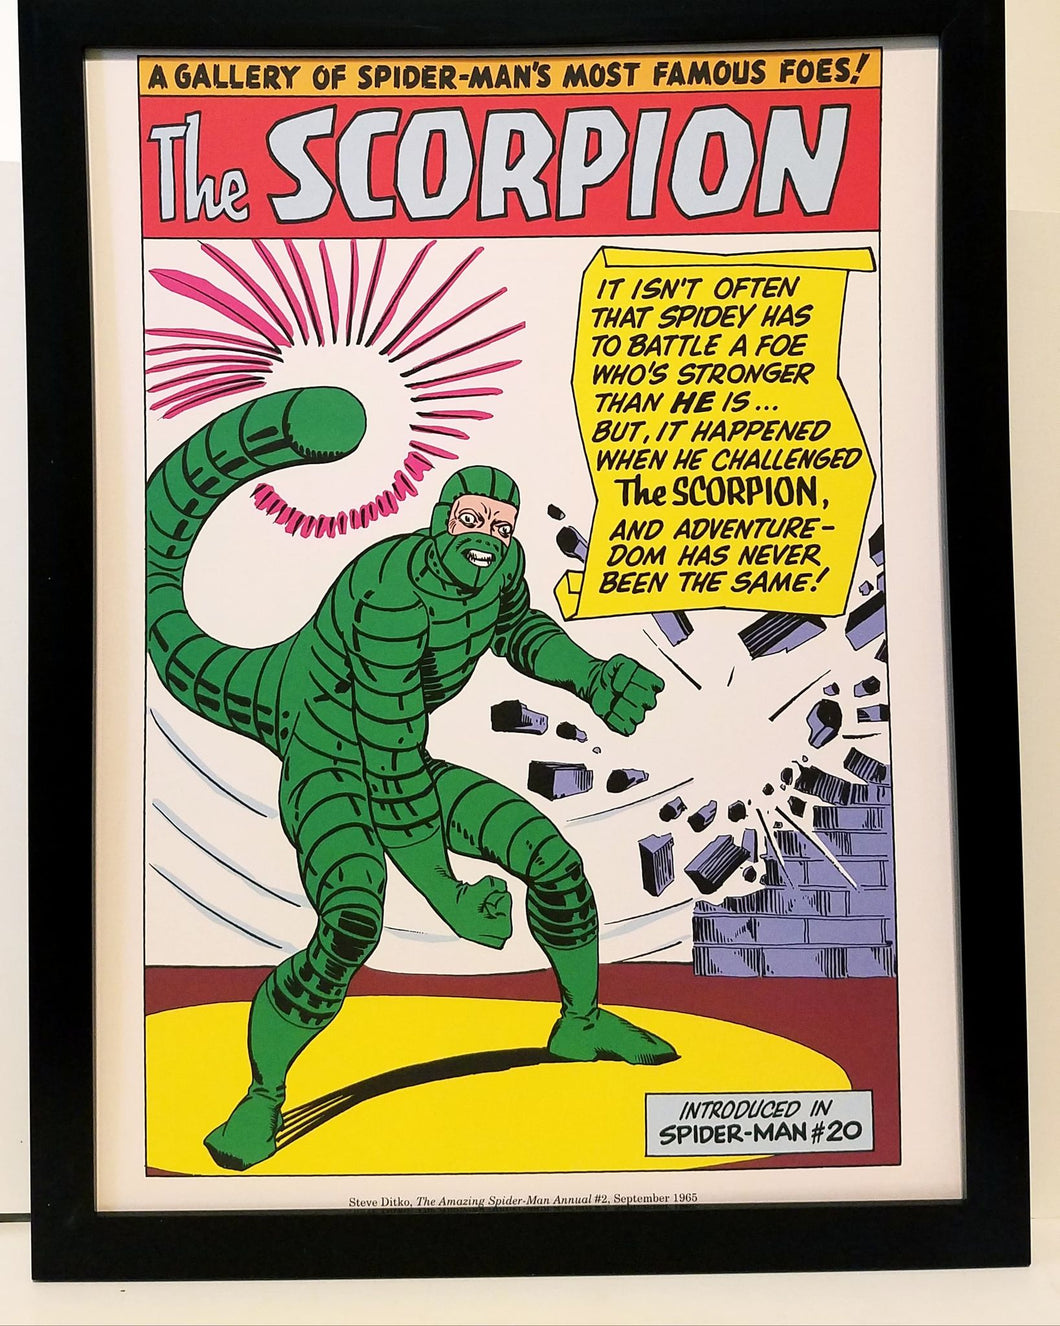 Spider-Man Scorpion by Steve Ditko 9x12 FRAMED Marvel Comics Vintage Art Print Poster